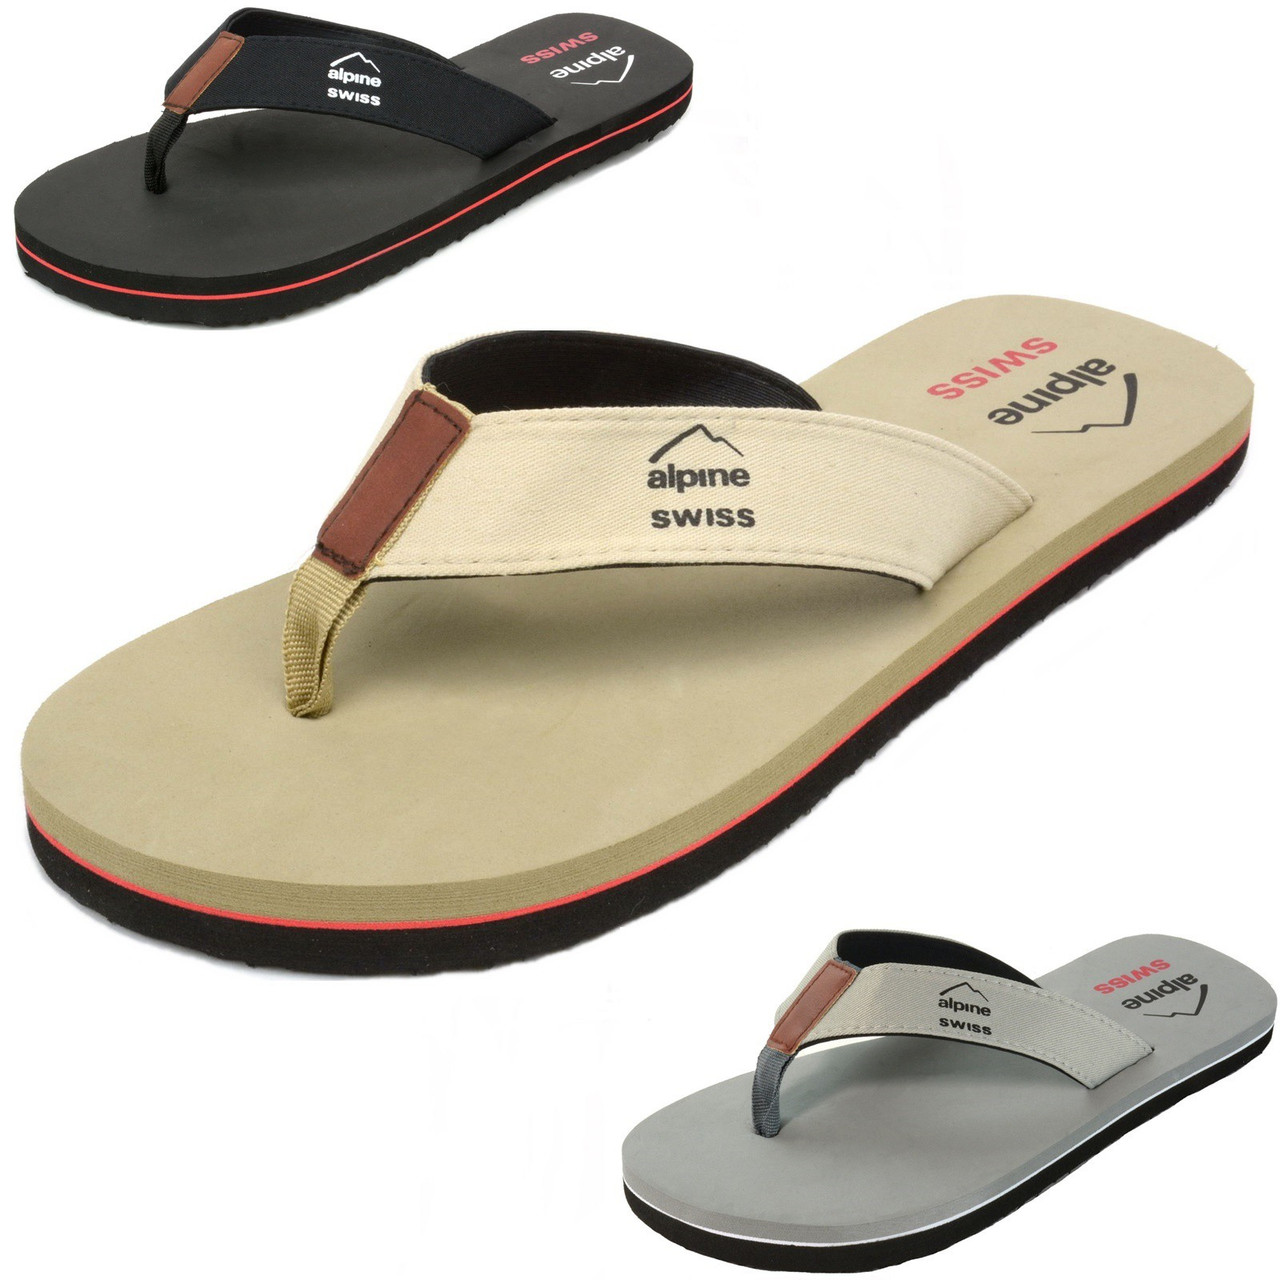 Swiss Mens Flip Flops Beach Sandals Lightweight EVA Sole Comfort Thongs - Alpine Swiss